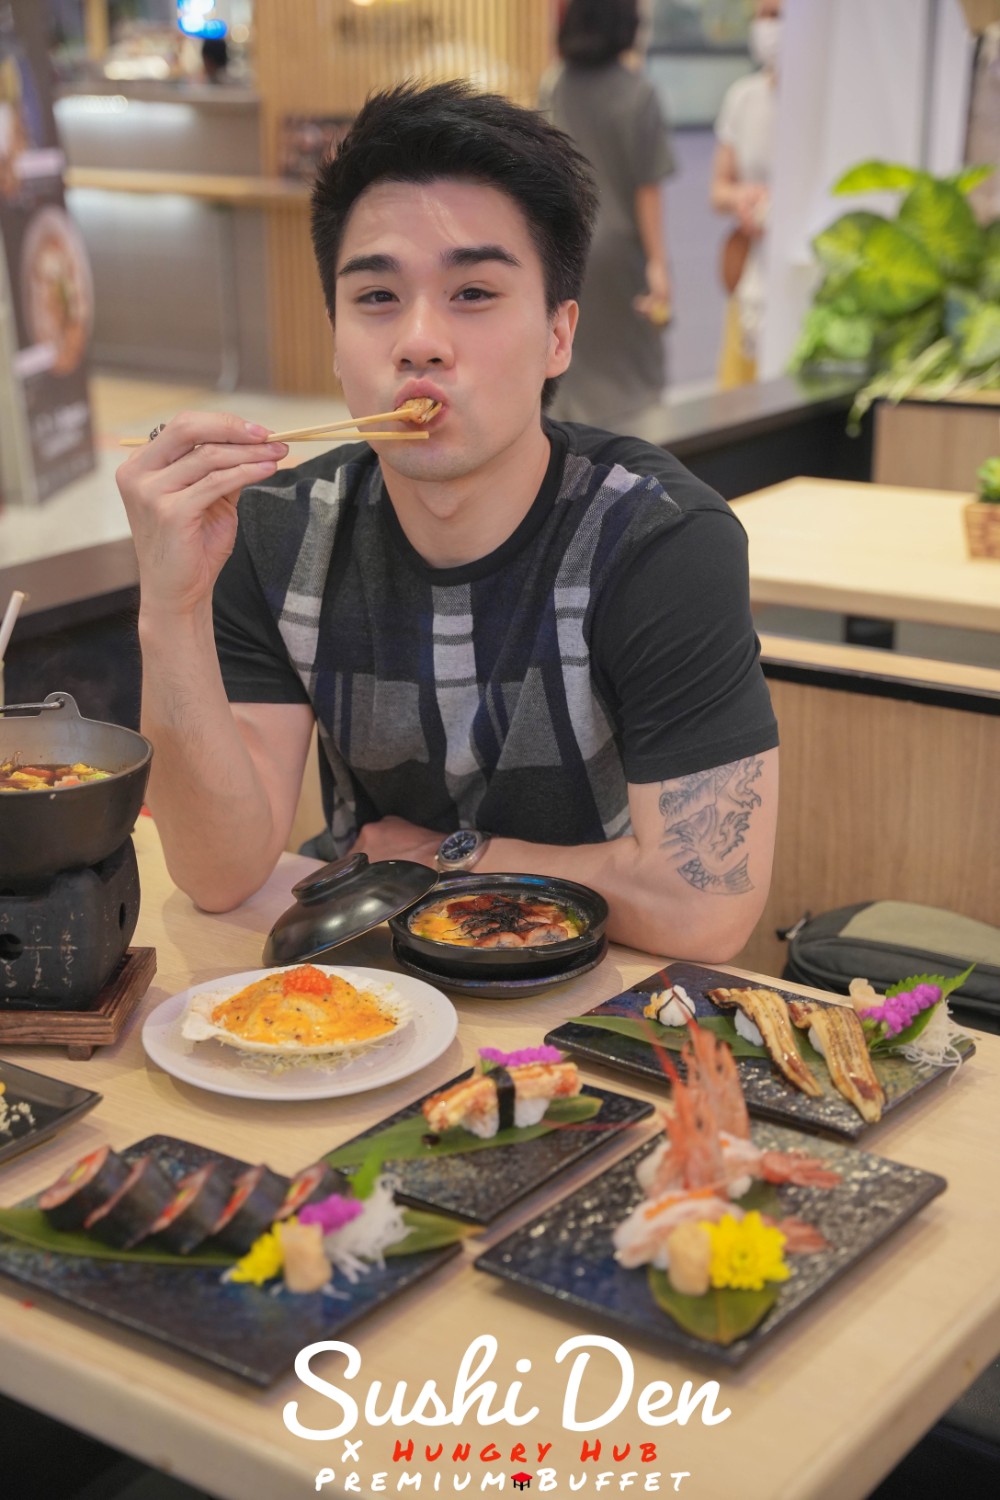 [CR] Sushi Den บุฟเฟ่อาหารญิปุ่นพรีเมียม สาขาเซ็นทรัลเวิล ราคา  990 / 1,490 / 1,990 โคตรเด็ด pantip